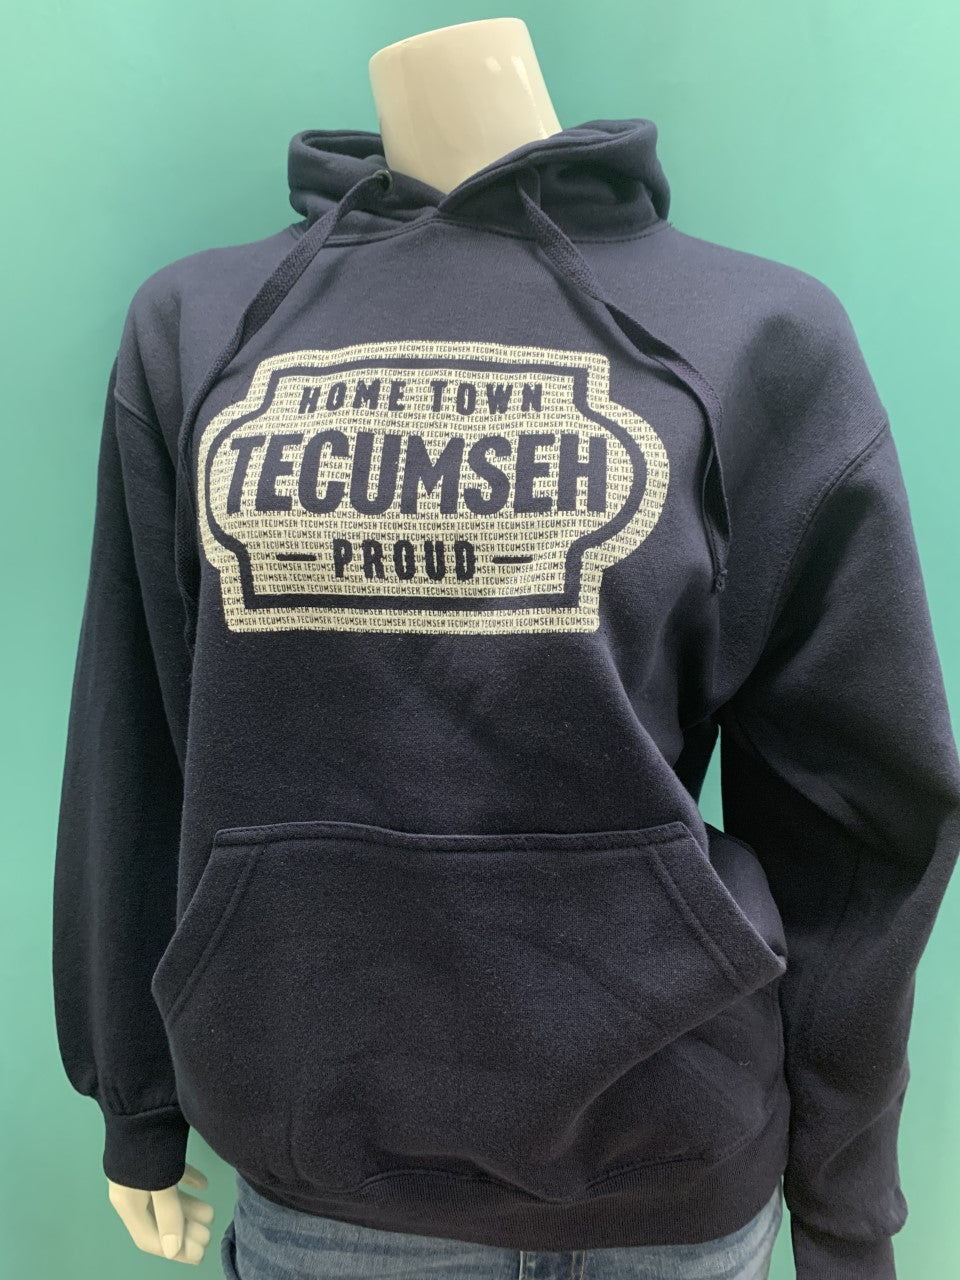 Hometown Tecumseh Proud Thick Hoodie - Navy